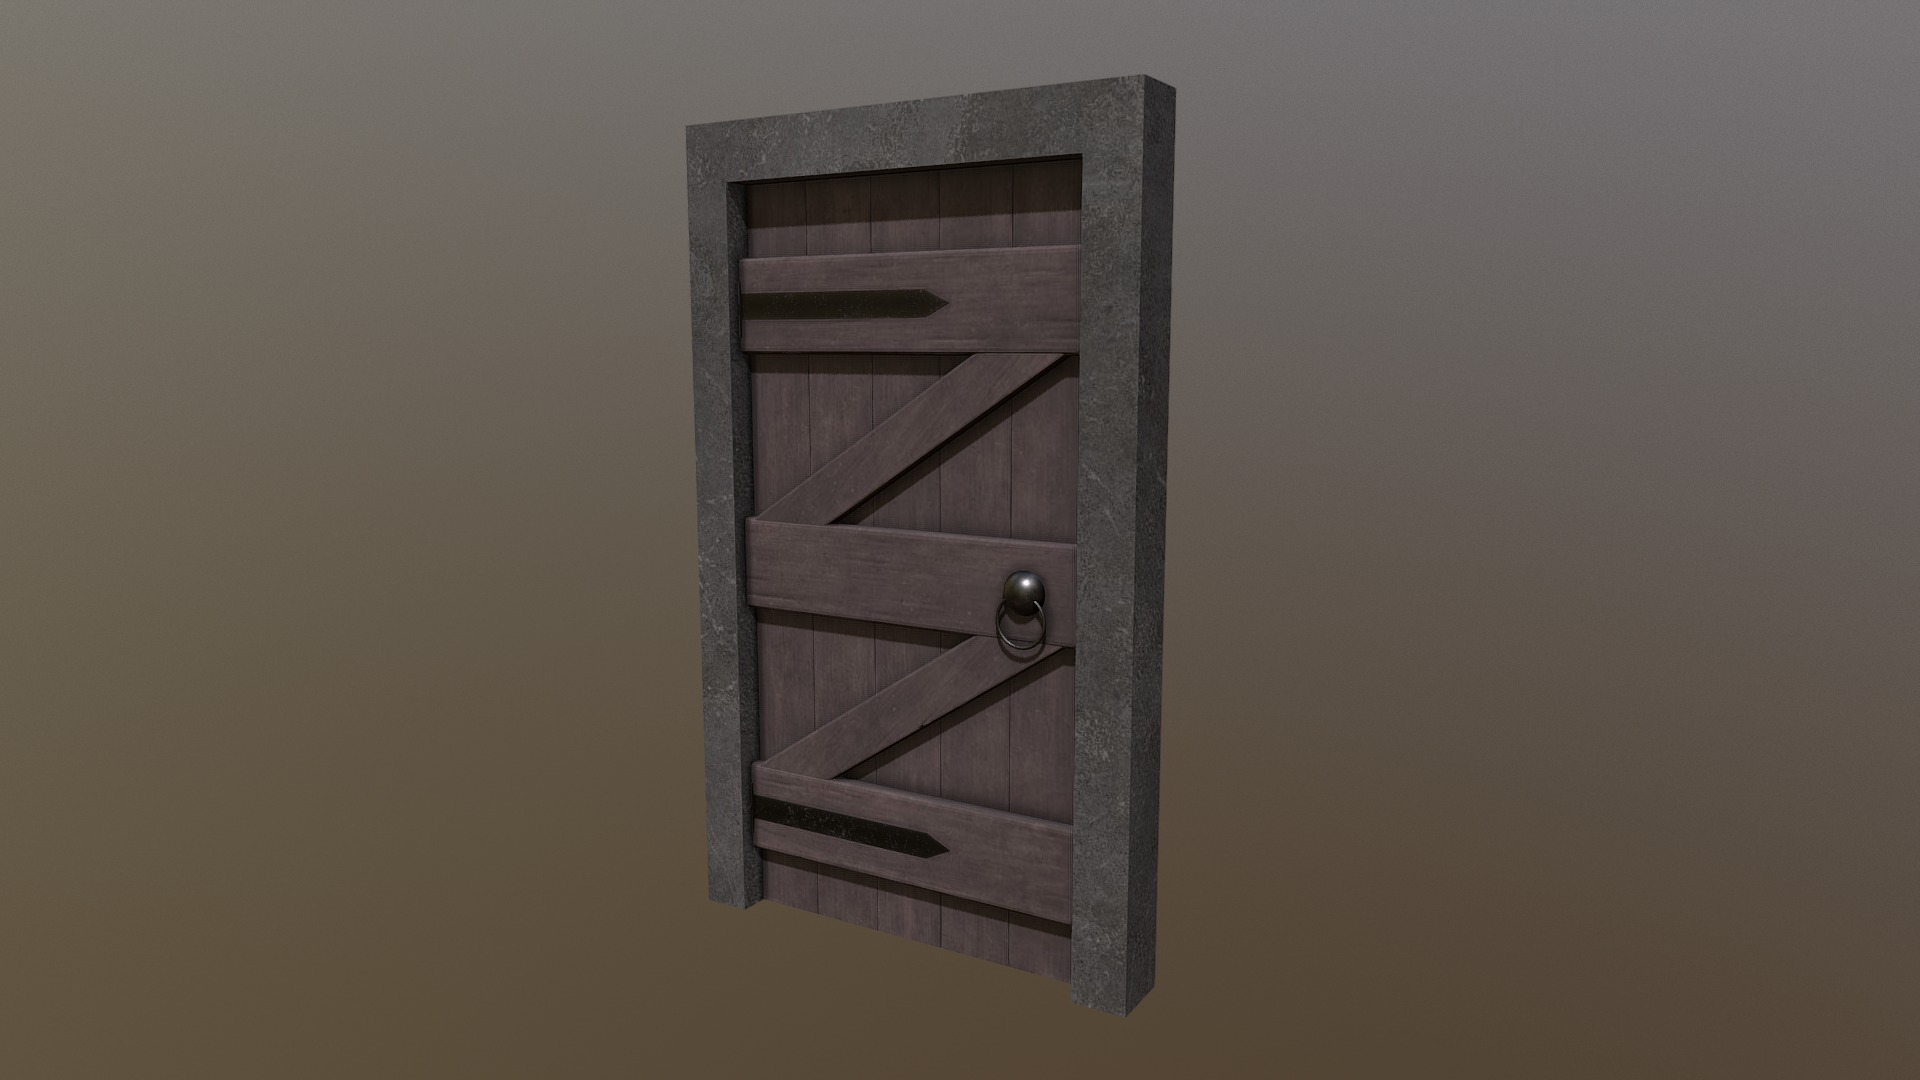 3D model Rustic Medieval House Asset – Door (Animated) - This is a 3D model of the Rustic Medieval House Asset - Door (Animated). The 3D model is about a wooden door with a hole in it.